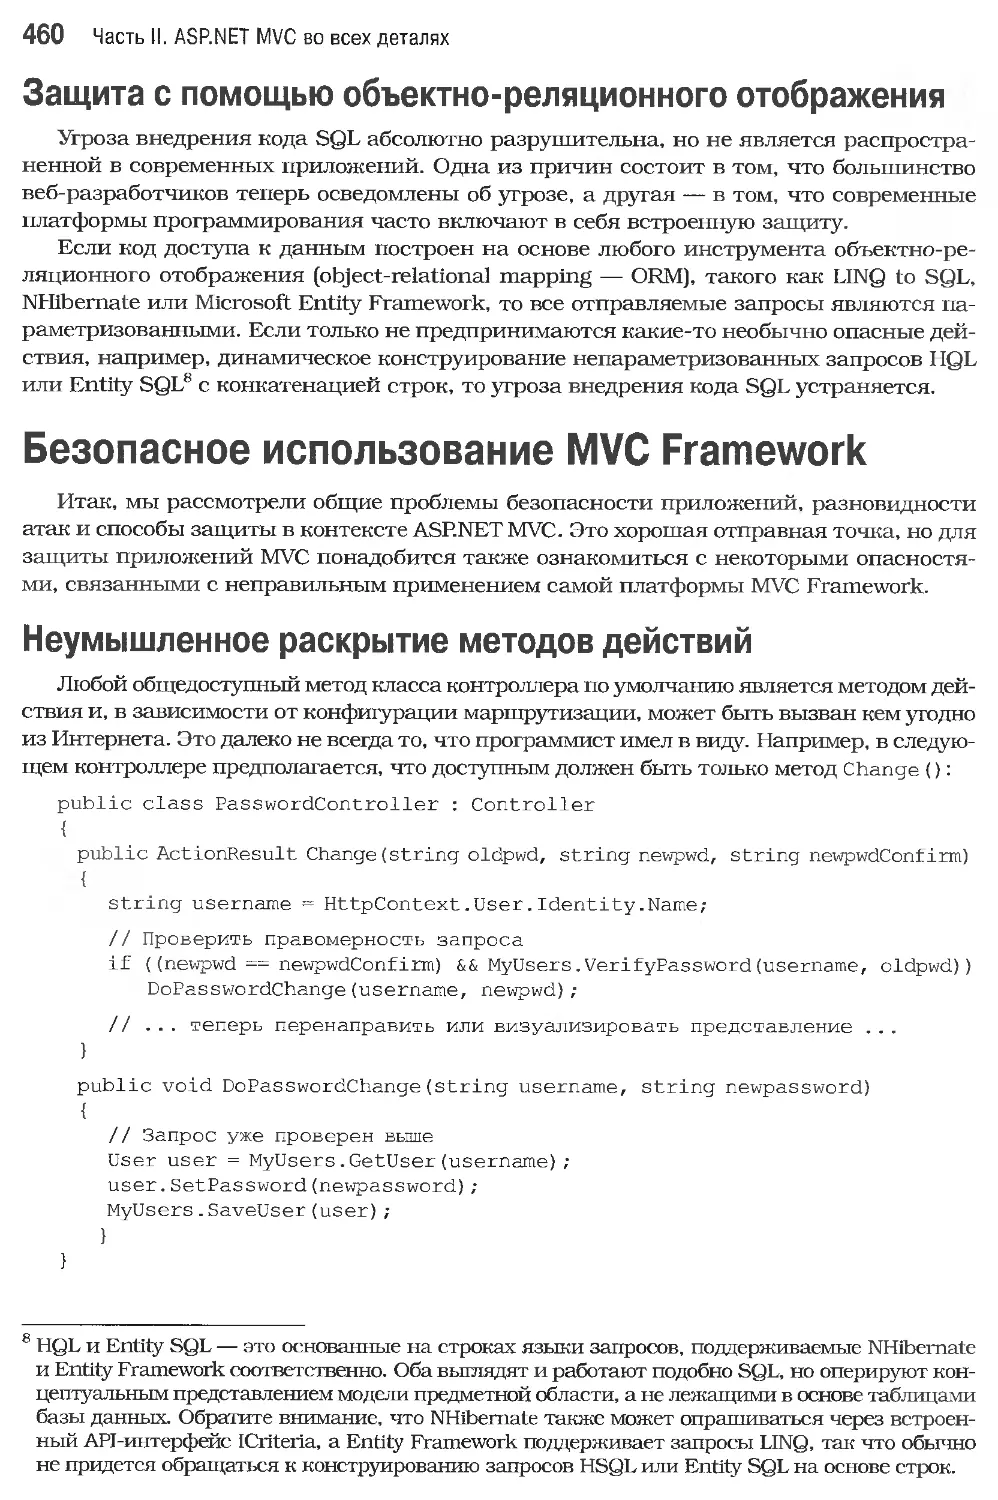 Защита с помощью объектно-реляционного отображения
Безопасное использование MVC Framework